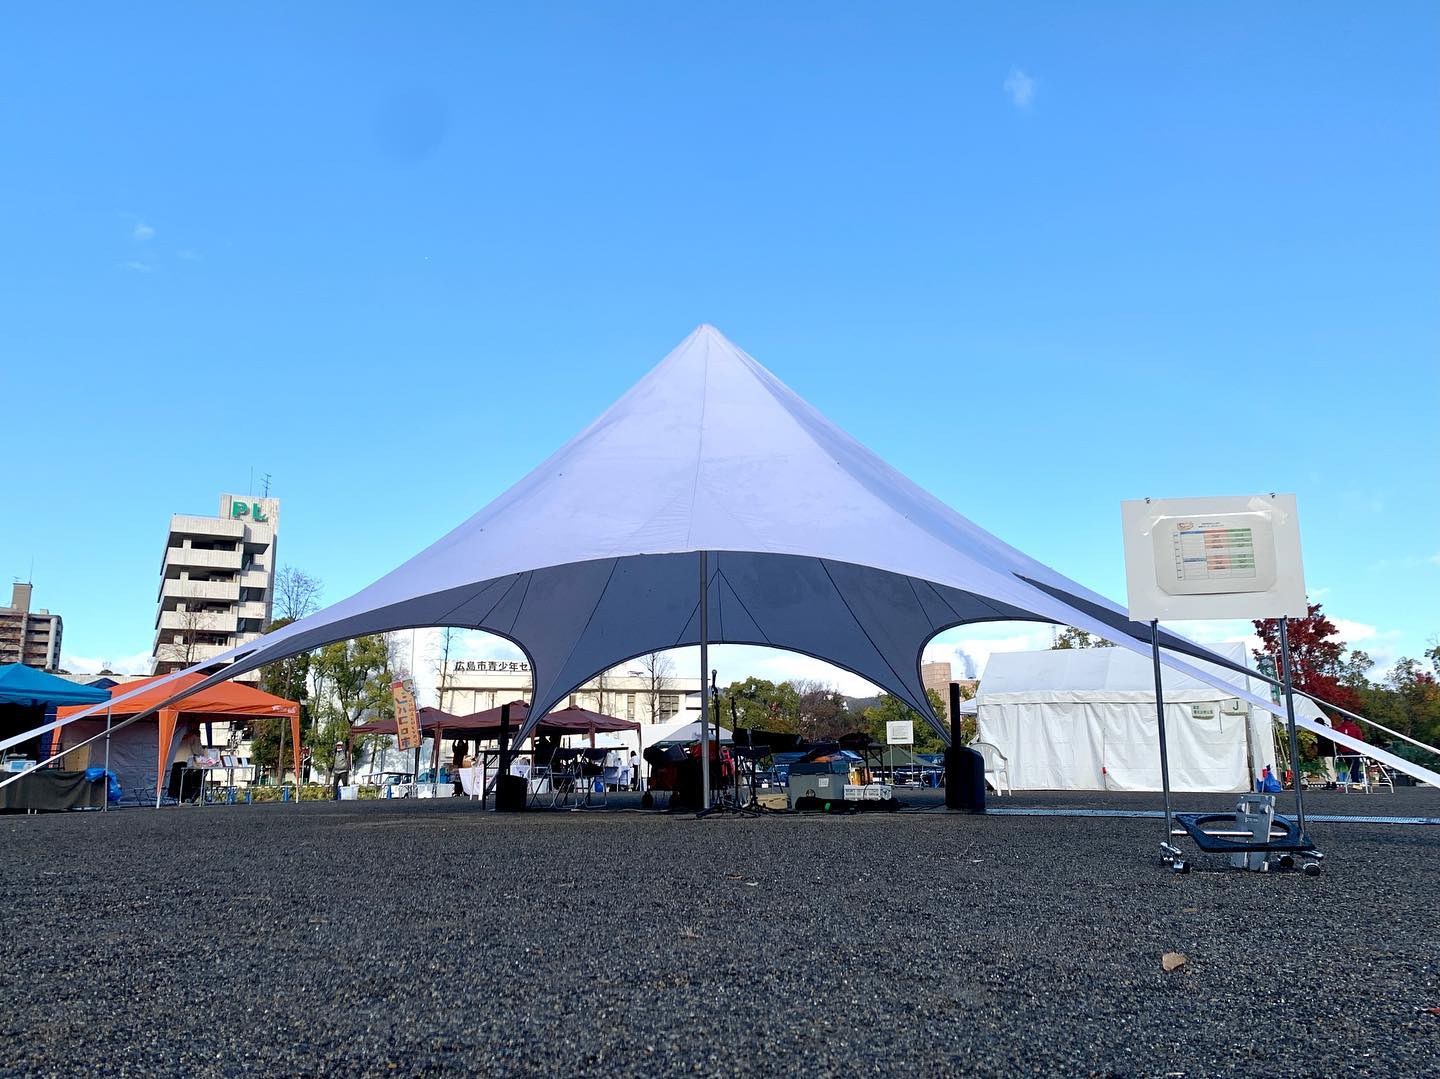 はなのわマルシェステージ設置完了！会場中央のテントがステージになります。朝雨もやんでお日様も出てました。#はなのわマルシェ